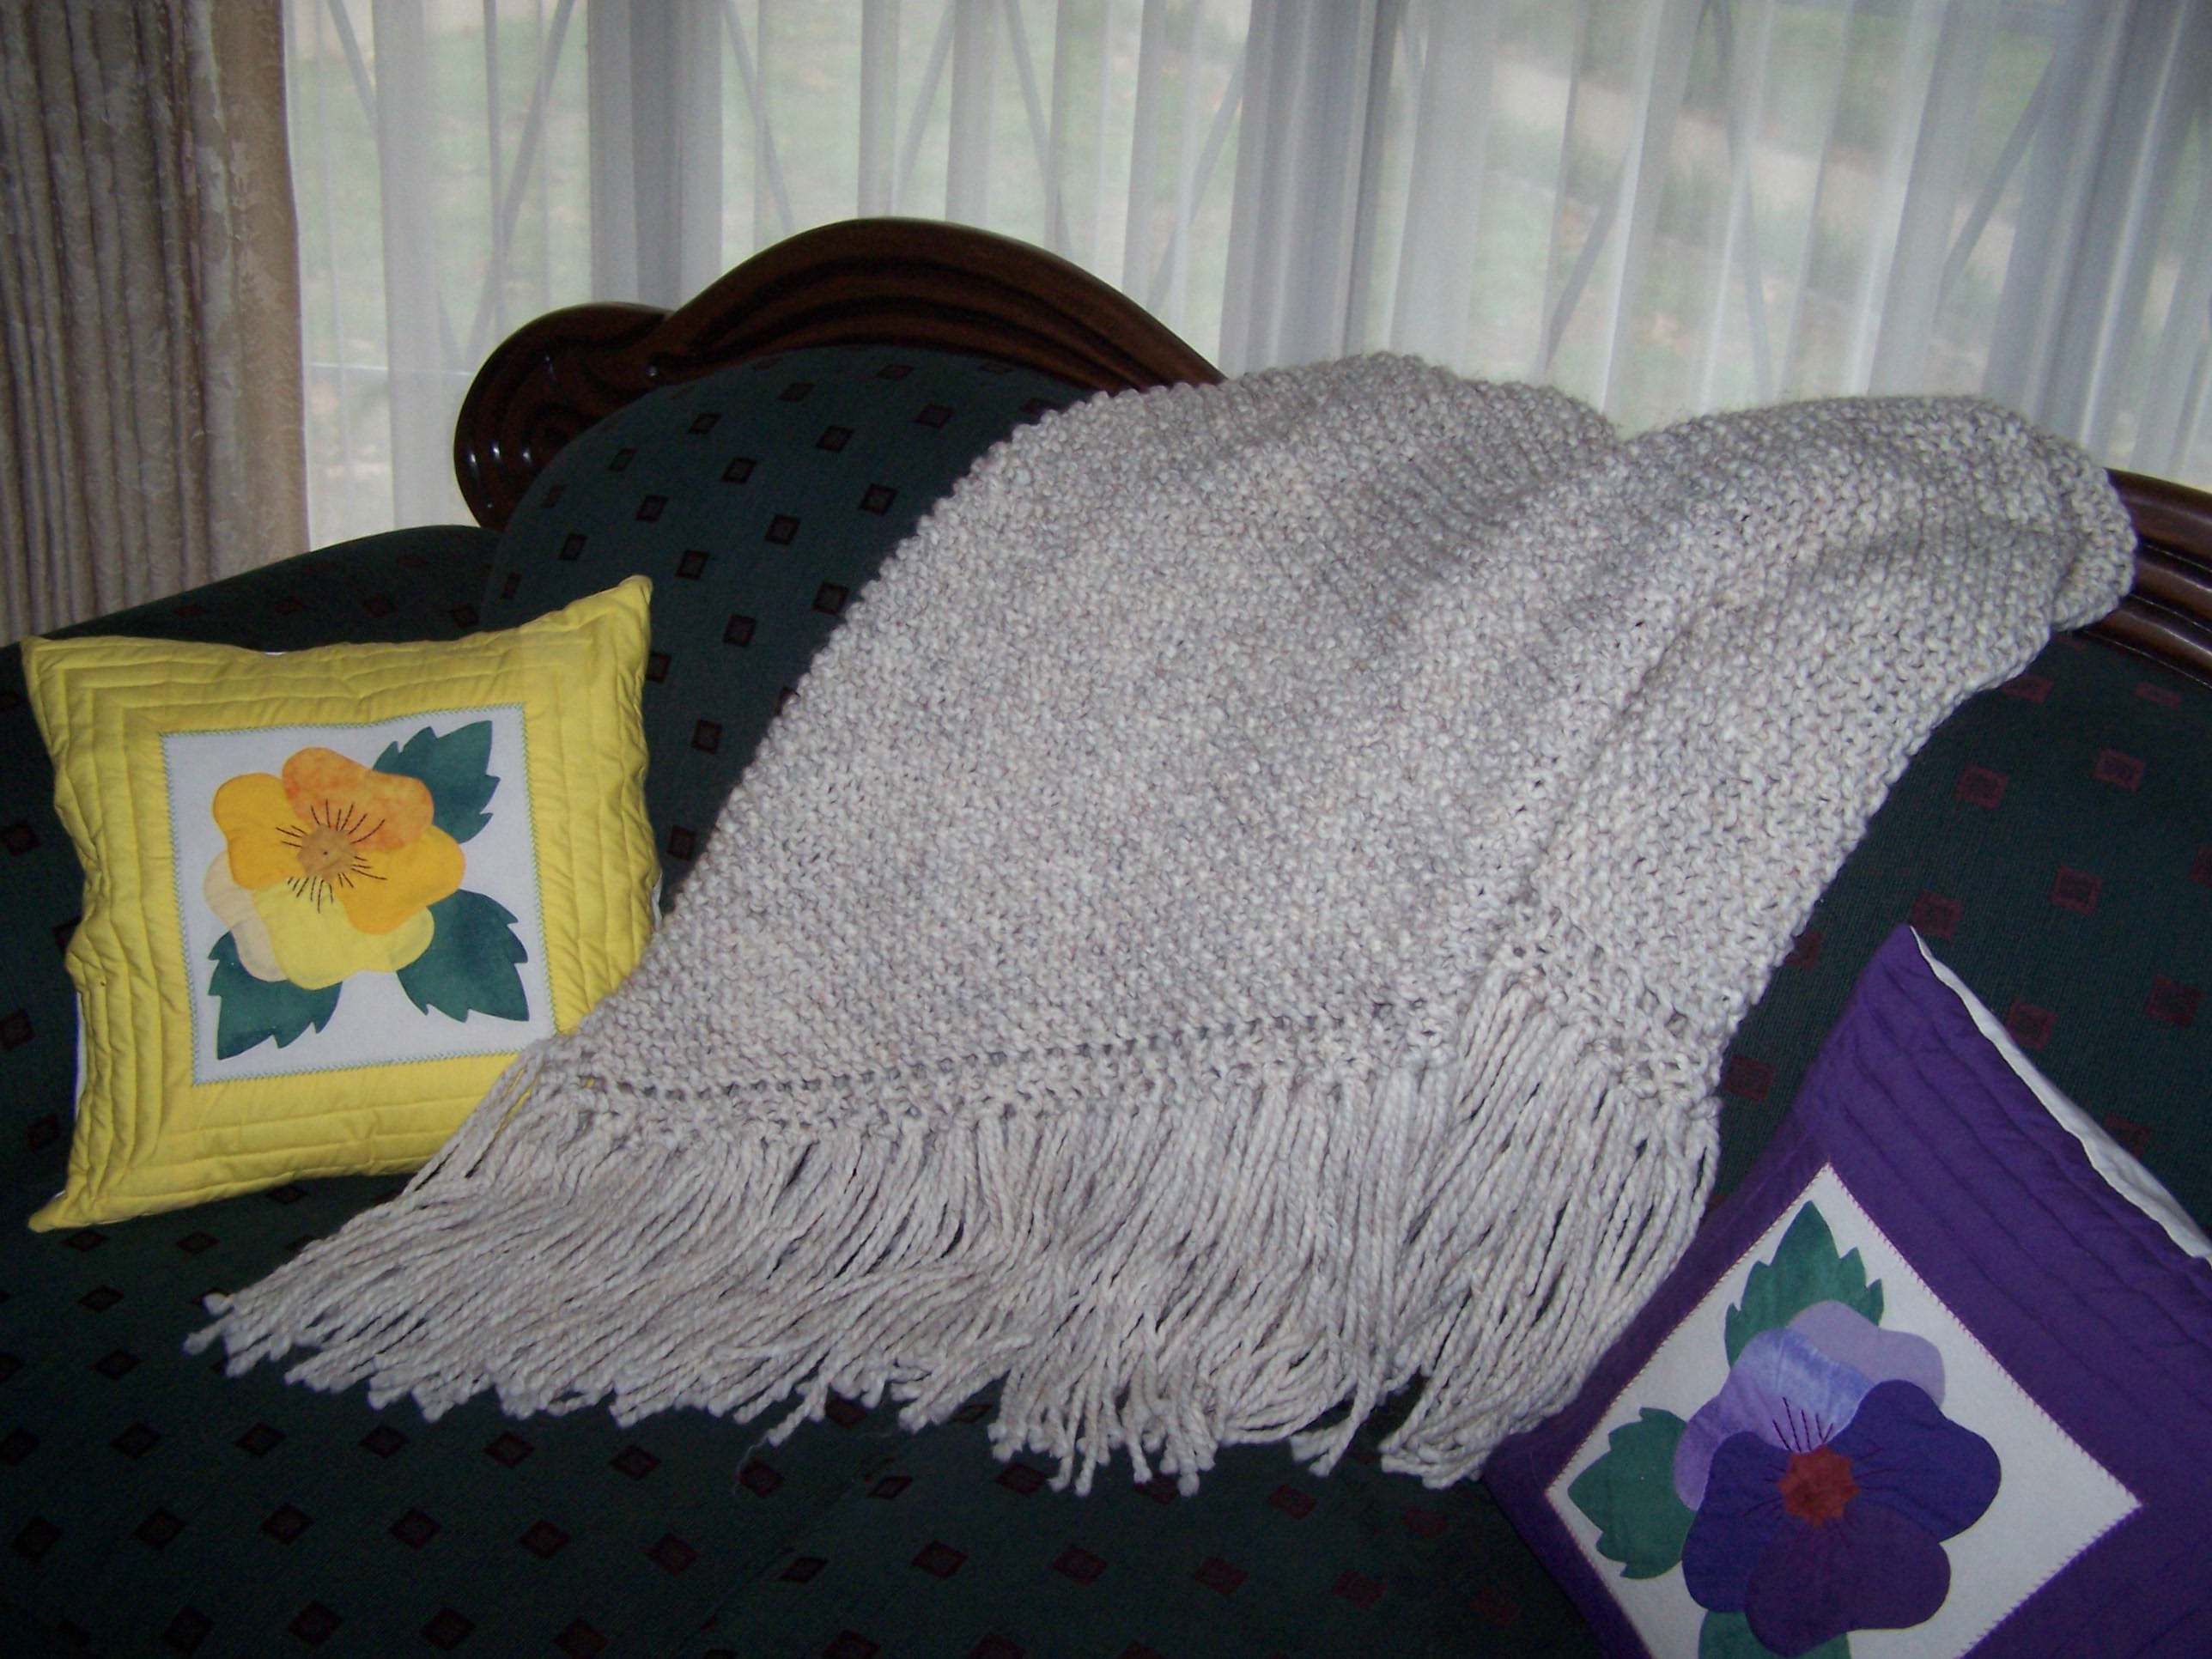 Free Knitting Pattern - Corona Prayer Shawl/Comfort Shawl